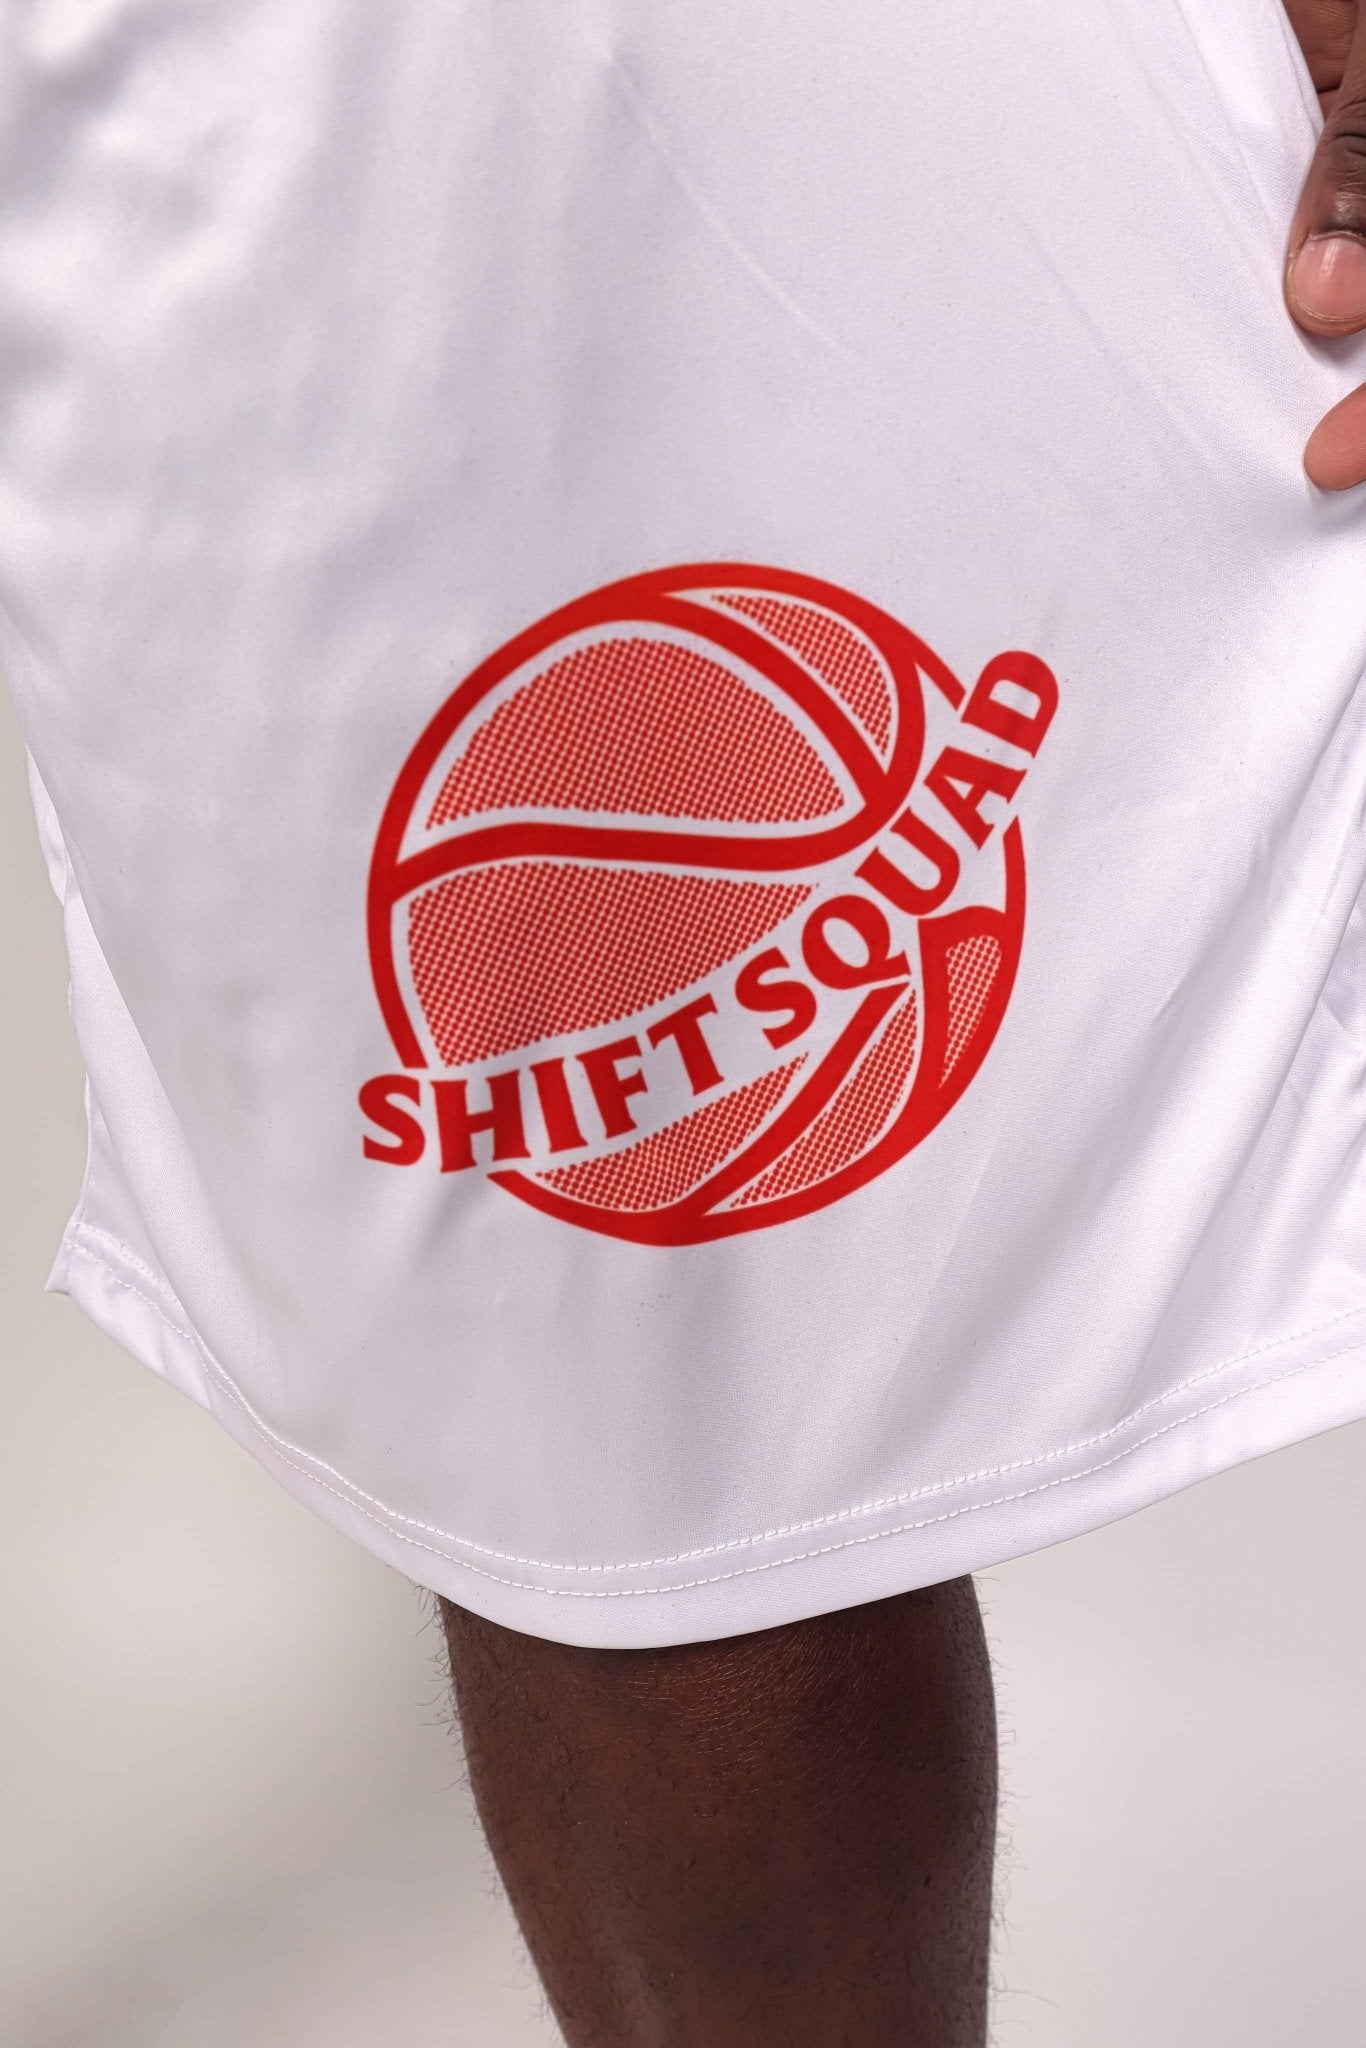 Customize Basketball Shorts - Shiftsquad